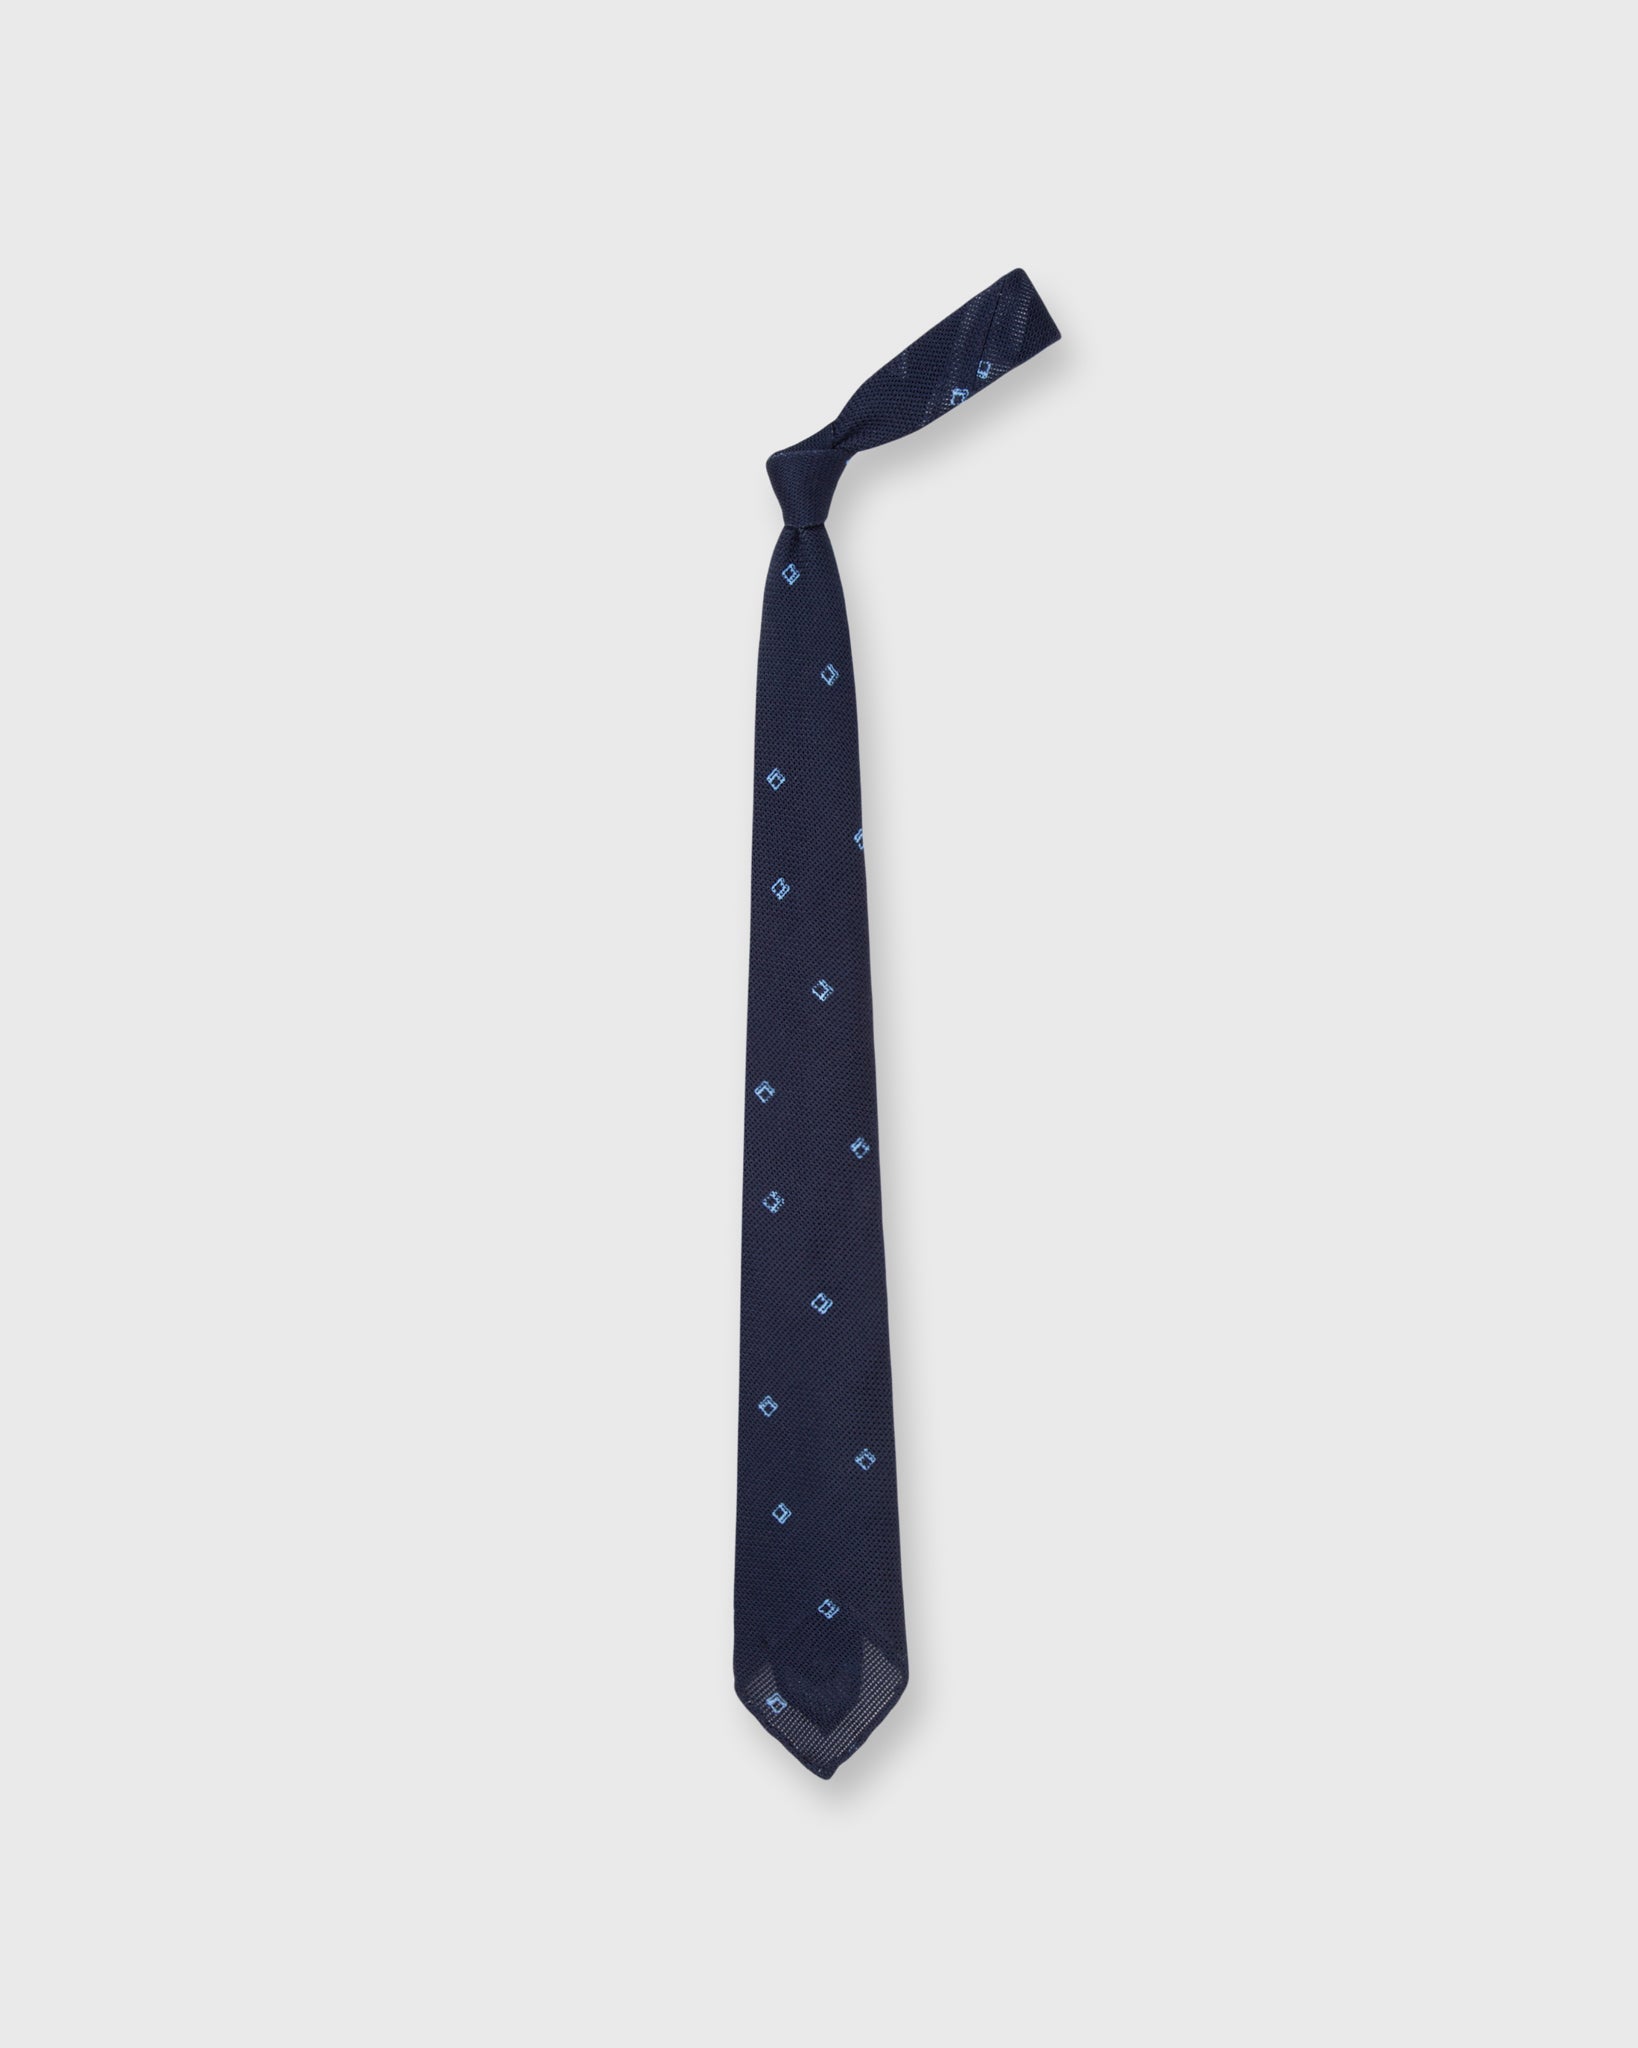 Cotton Woven Tie in Navy/Sky Diamond